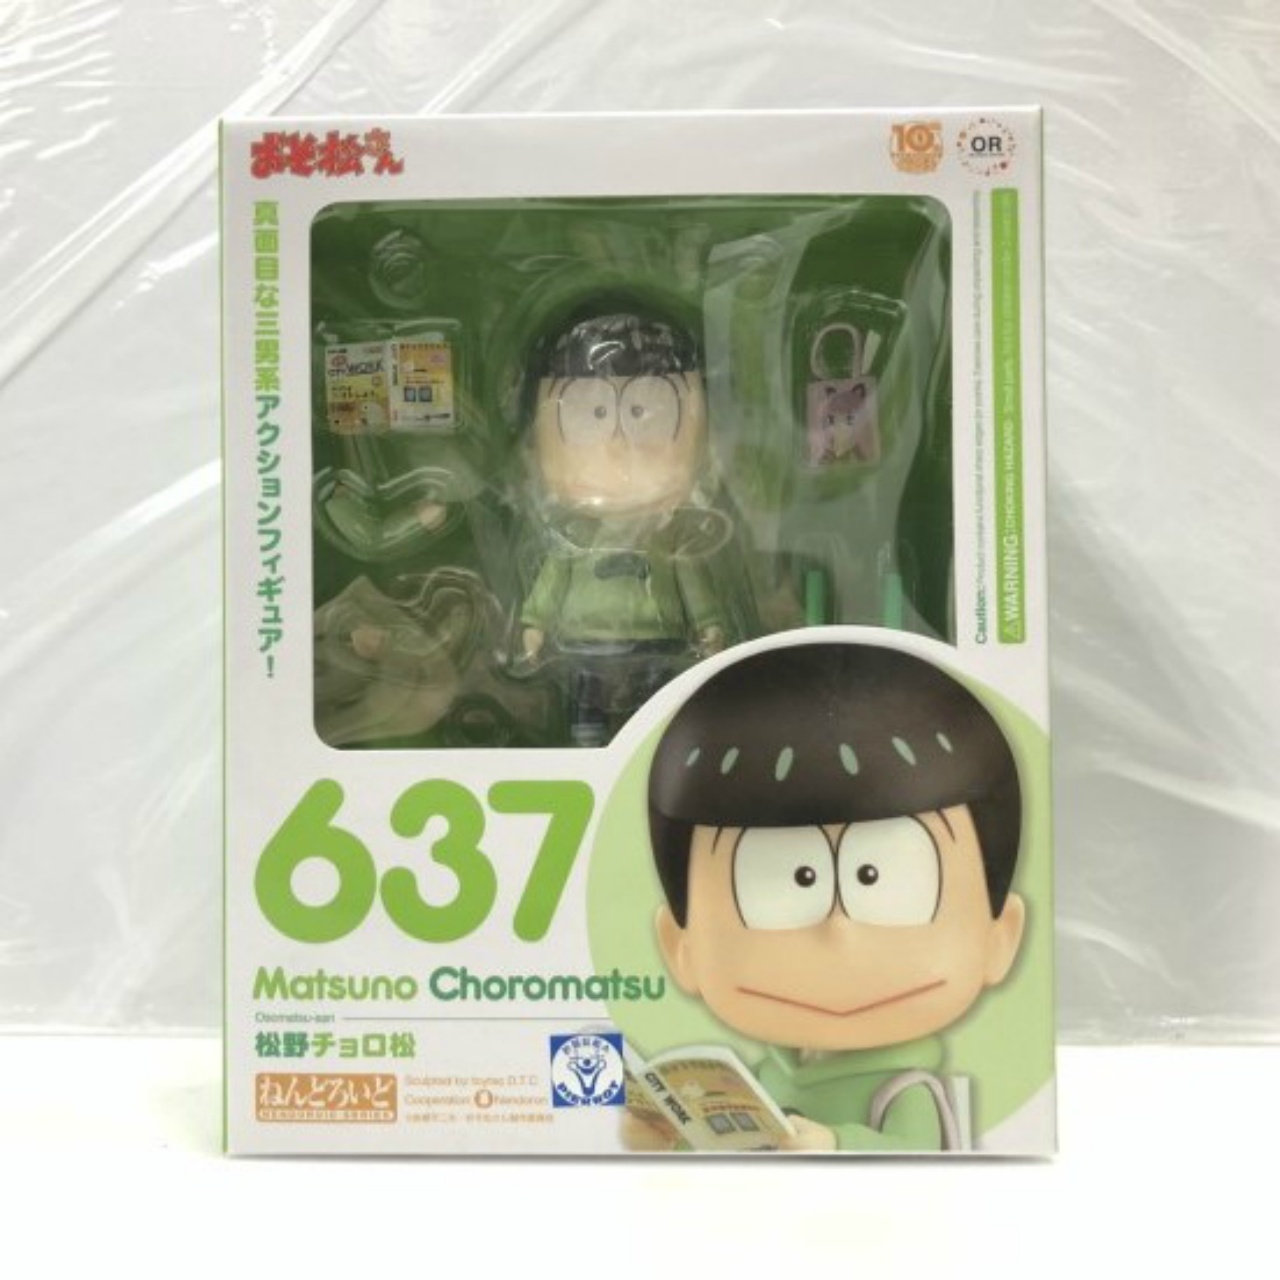 Nendoroid No.637 Choromatsu Matsuno